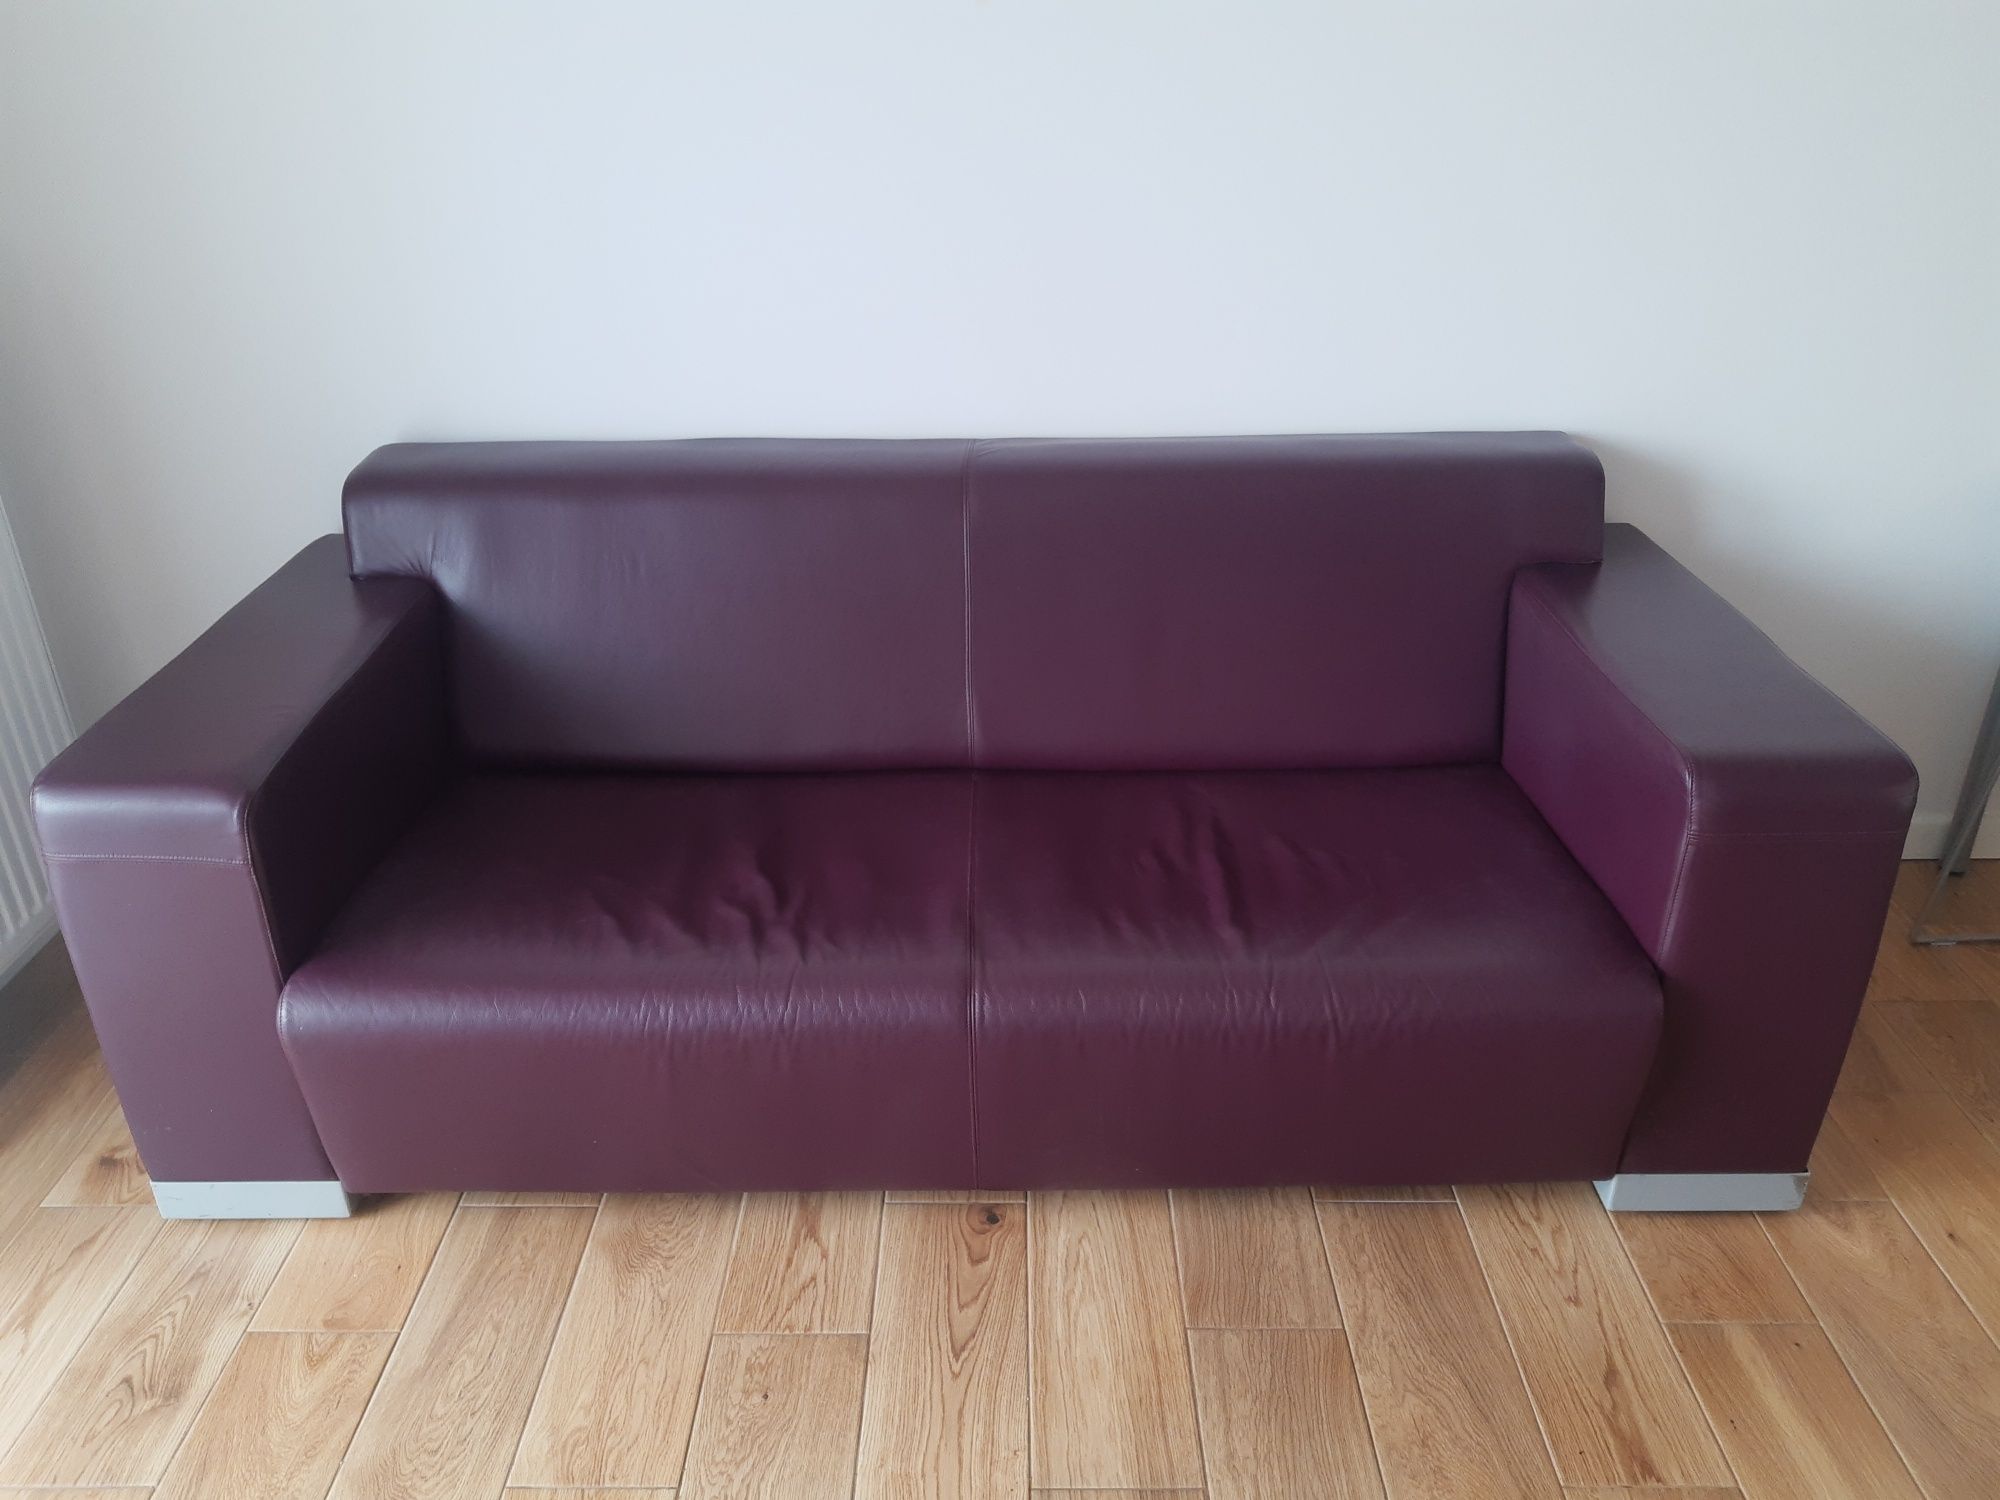 ProfimSeattle Sofa, kanapa SKÓRA, w kolorze fioletowym/burgund transpo